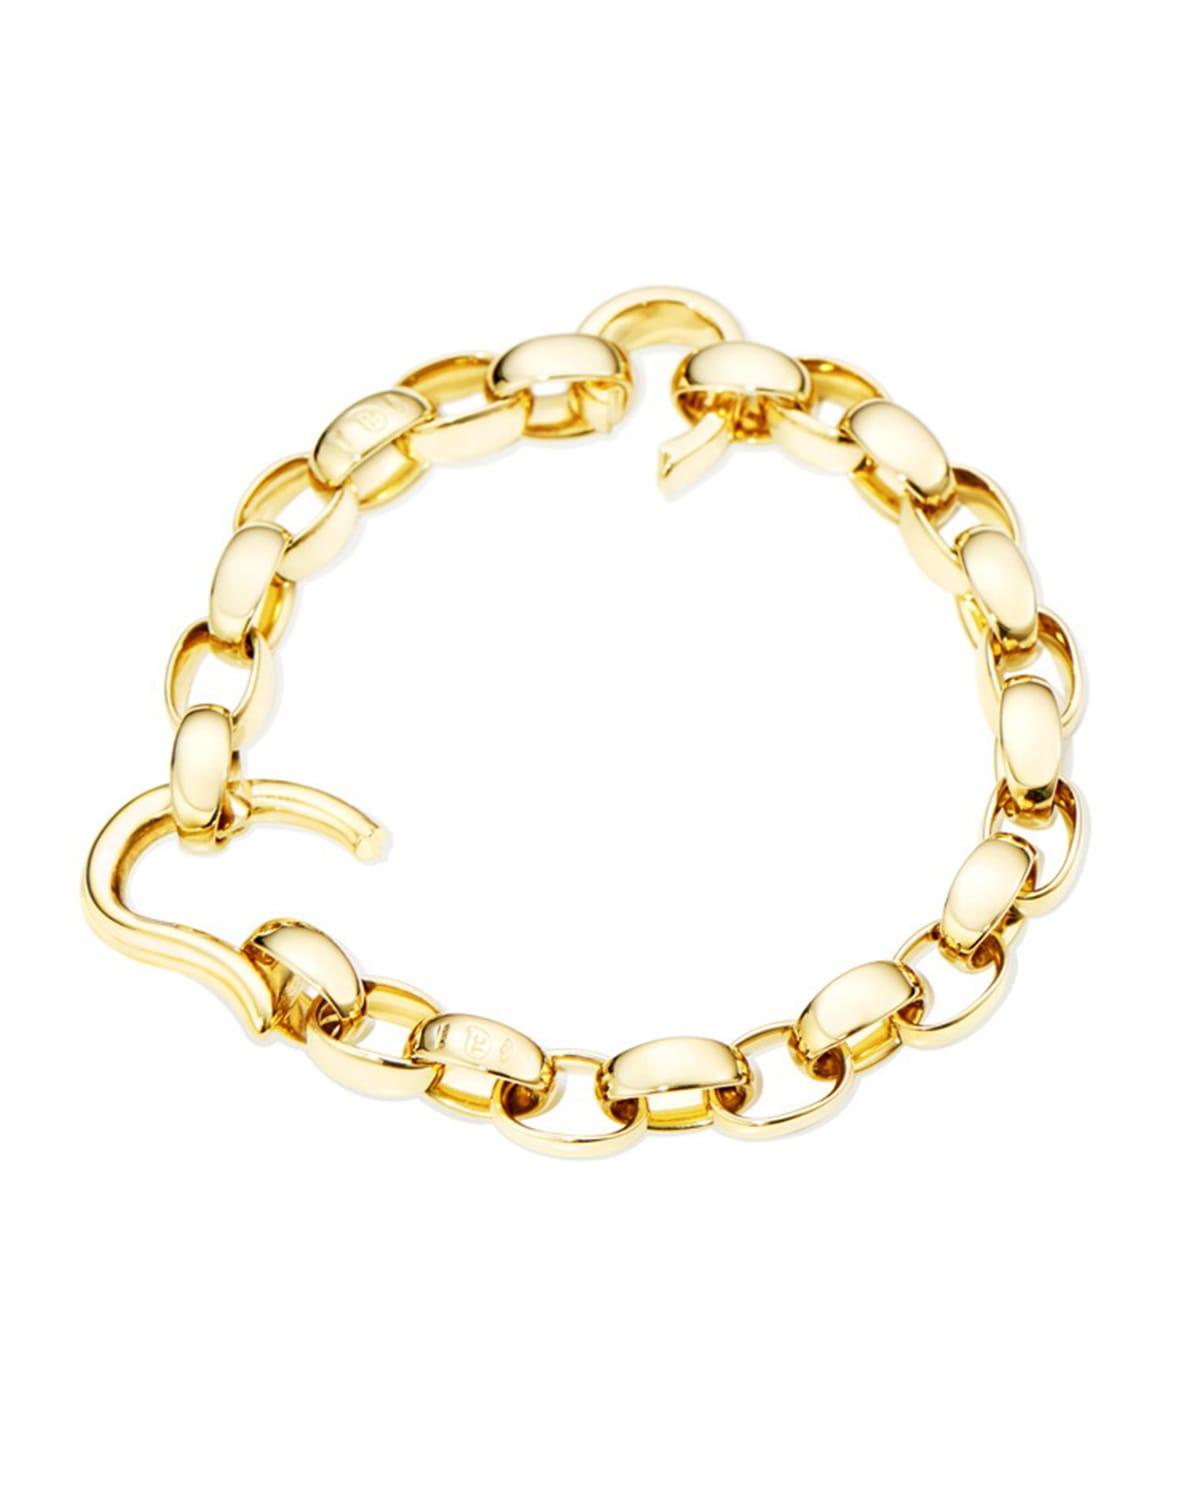 DROP 18k Yellow Gold Bracelet